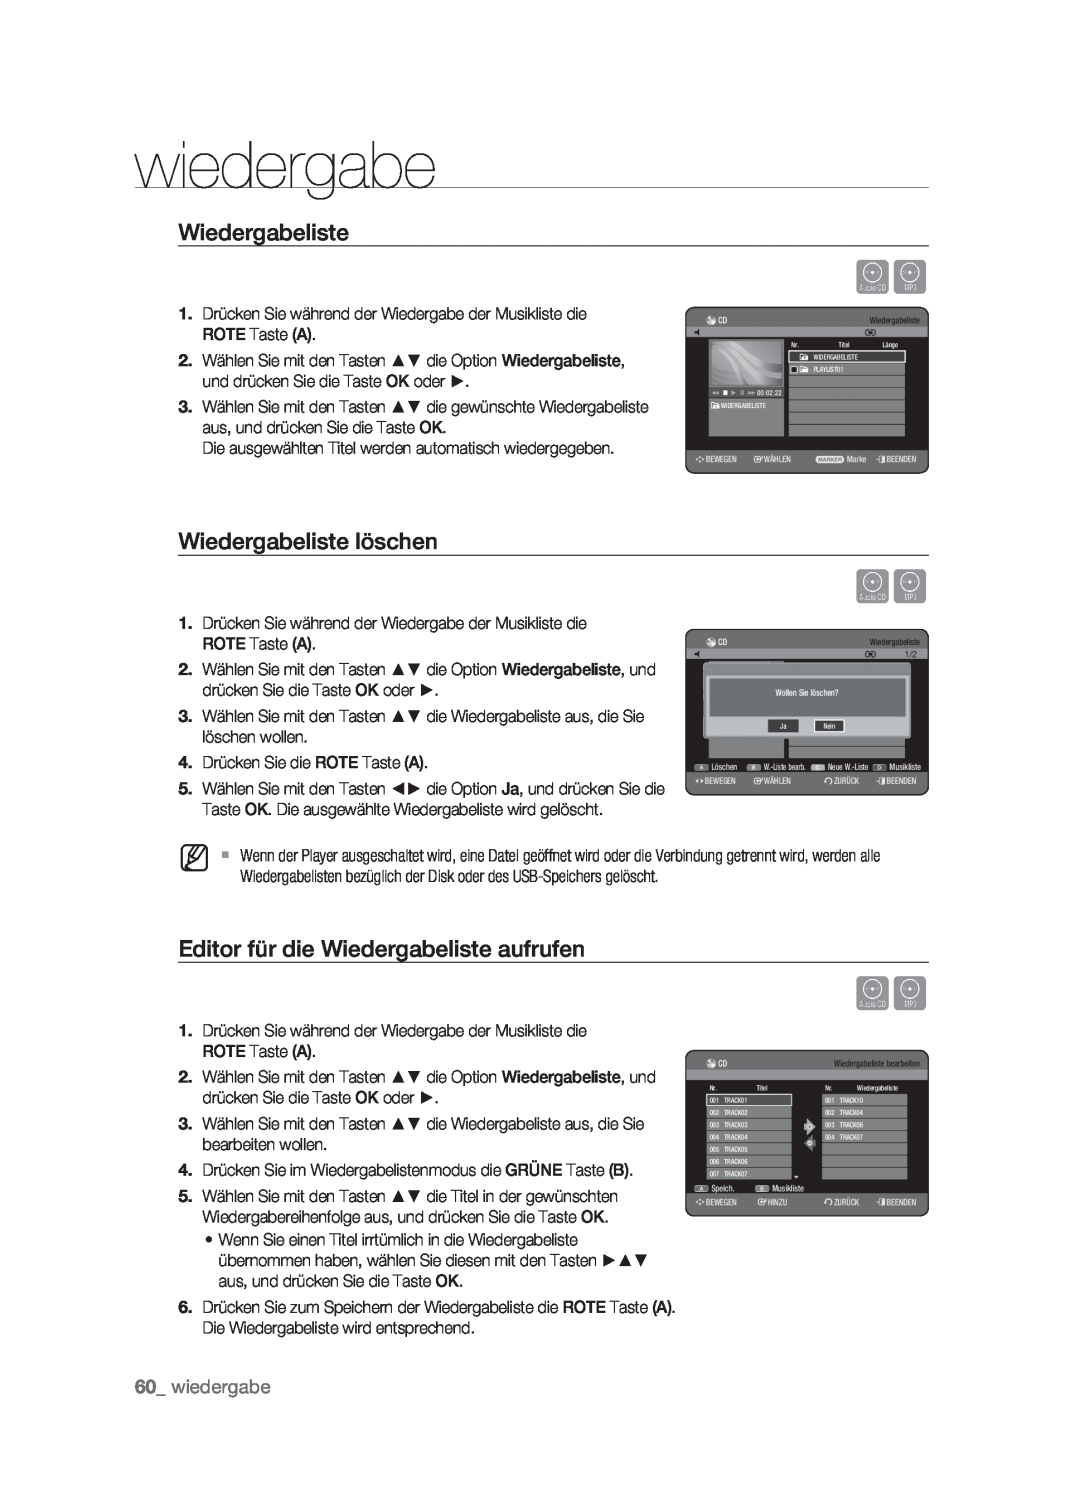 Samsung DVD-HR773/XEN, DVD-HR773/XEB manual Wiedergabeliste löschen, Editor für die Wiedergabeliste aufrufen, wiedergabe 